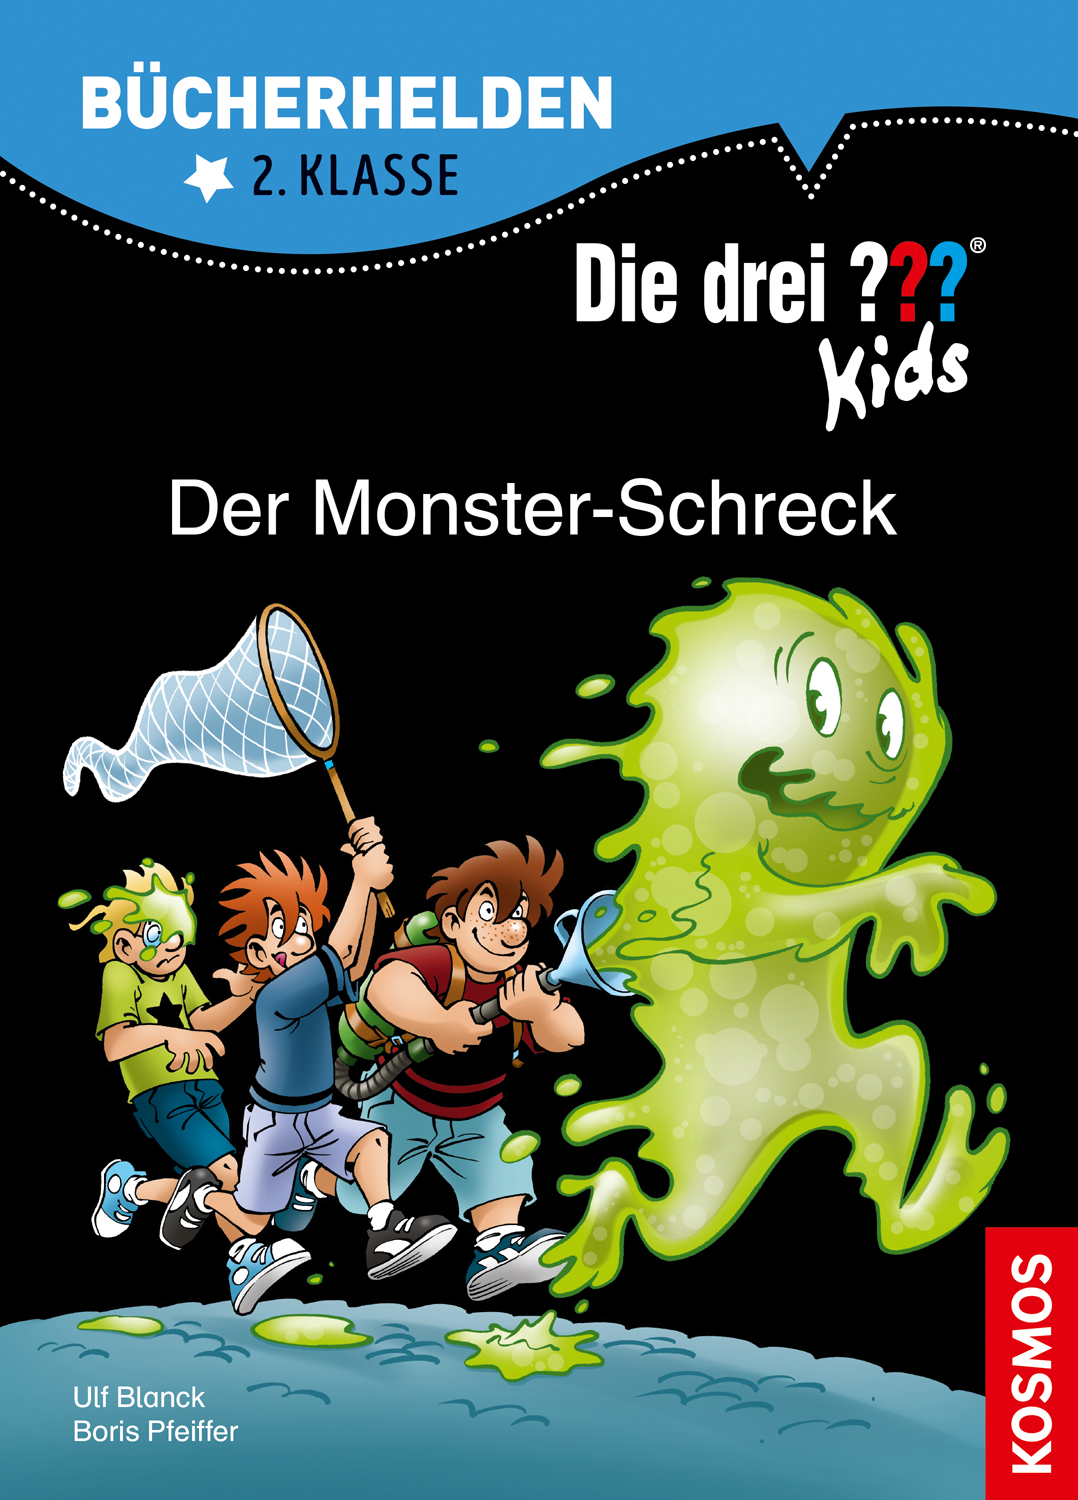 Die Drei ??? (Fragezeichen) Kids, Buch-Band 500: Die drei ??? Kids, Bücherhelden 2. Klasse, Der Monster-Schreck